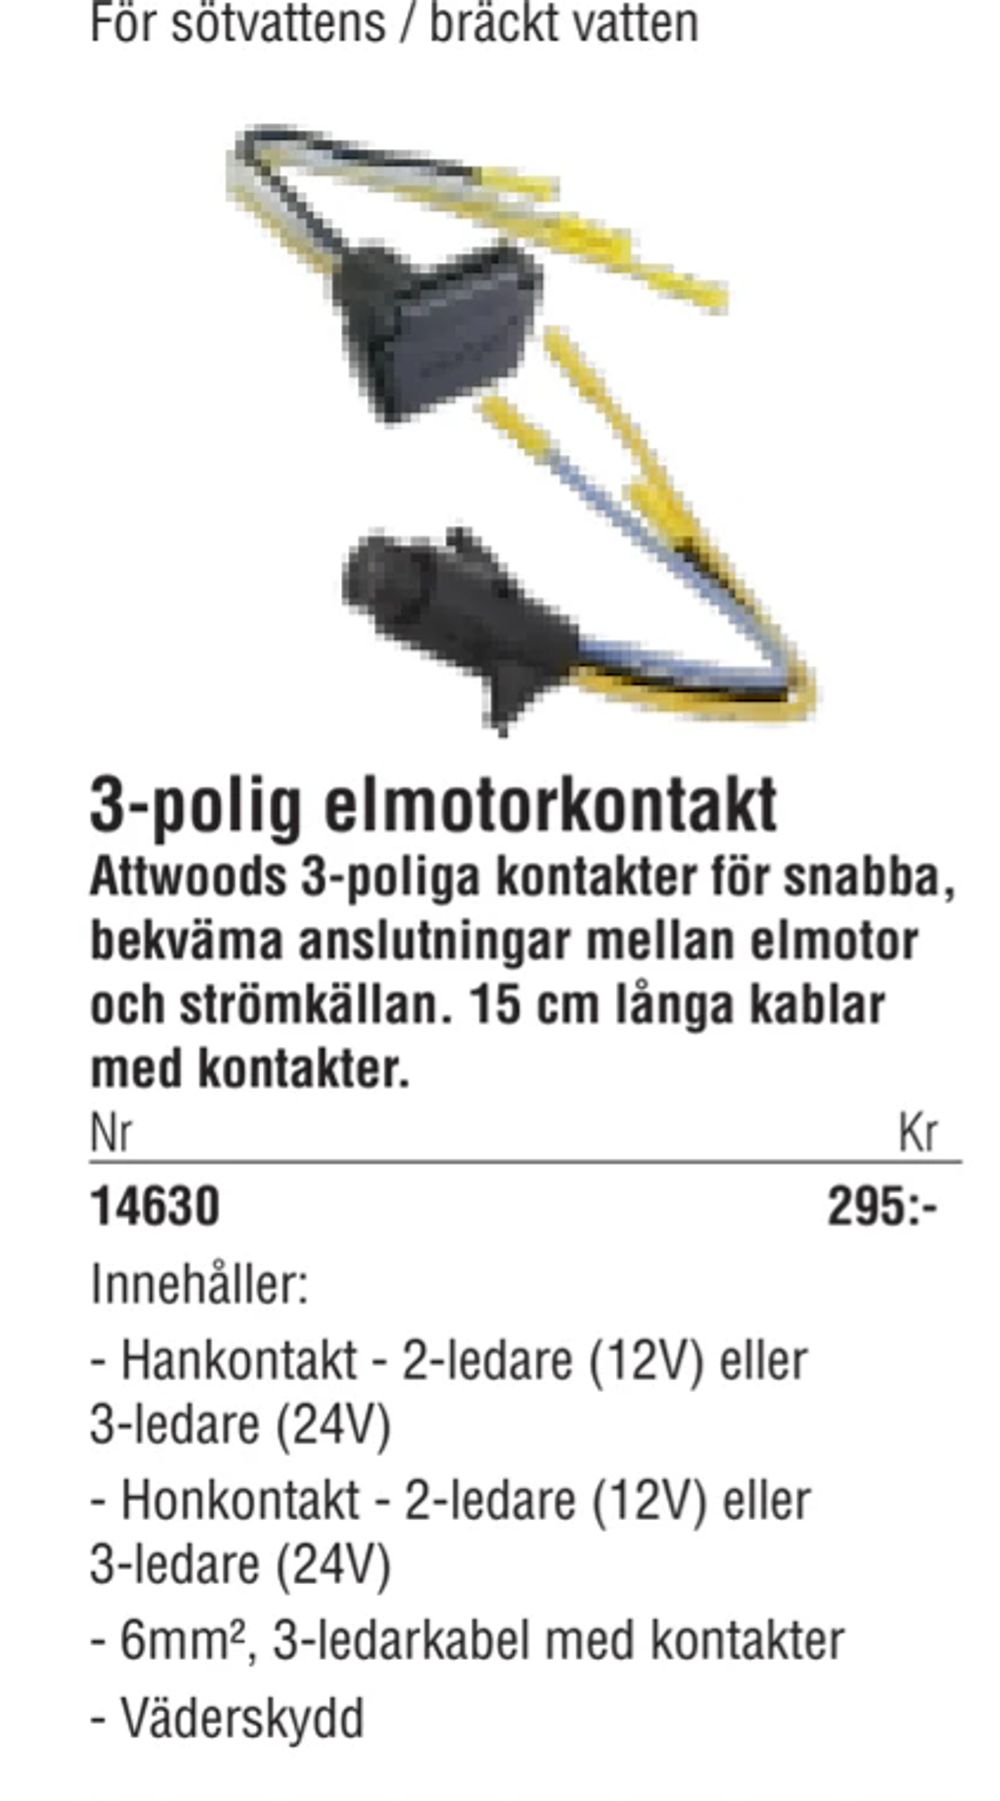 Erbjudanden på 3-polig elmotorkontakt från Erlandsons Brygga för 295 kr